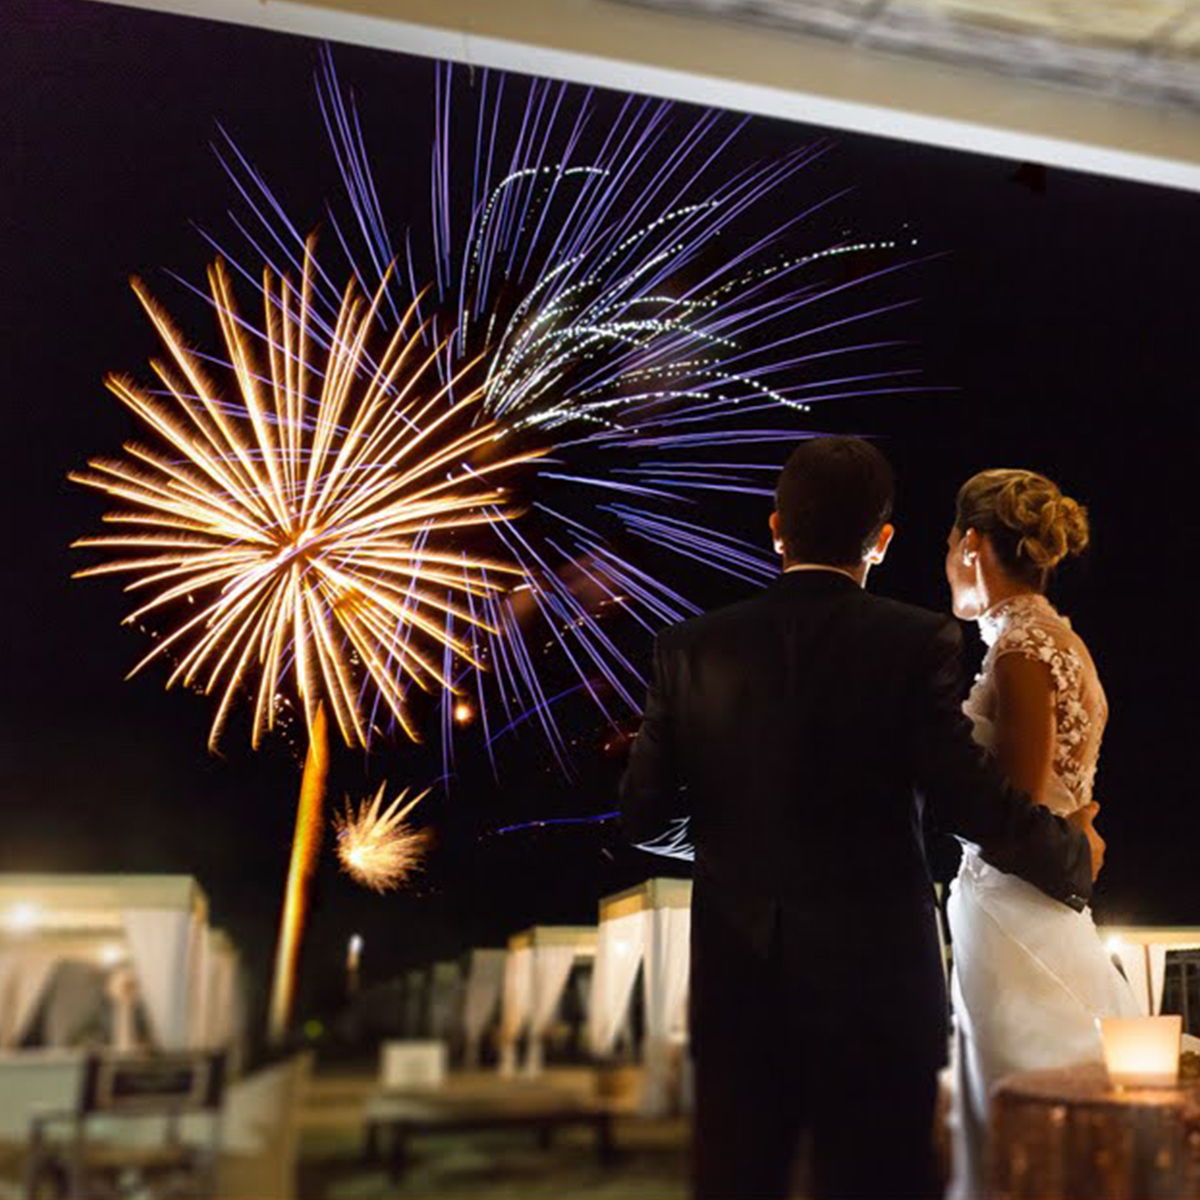 Un finale pirotecnico: celebrate le vostre nozze con i fuochi d'artificio!